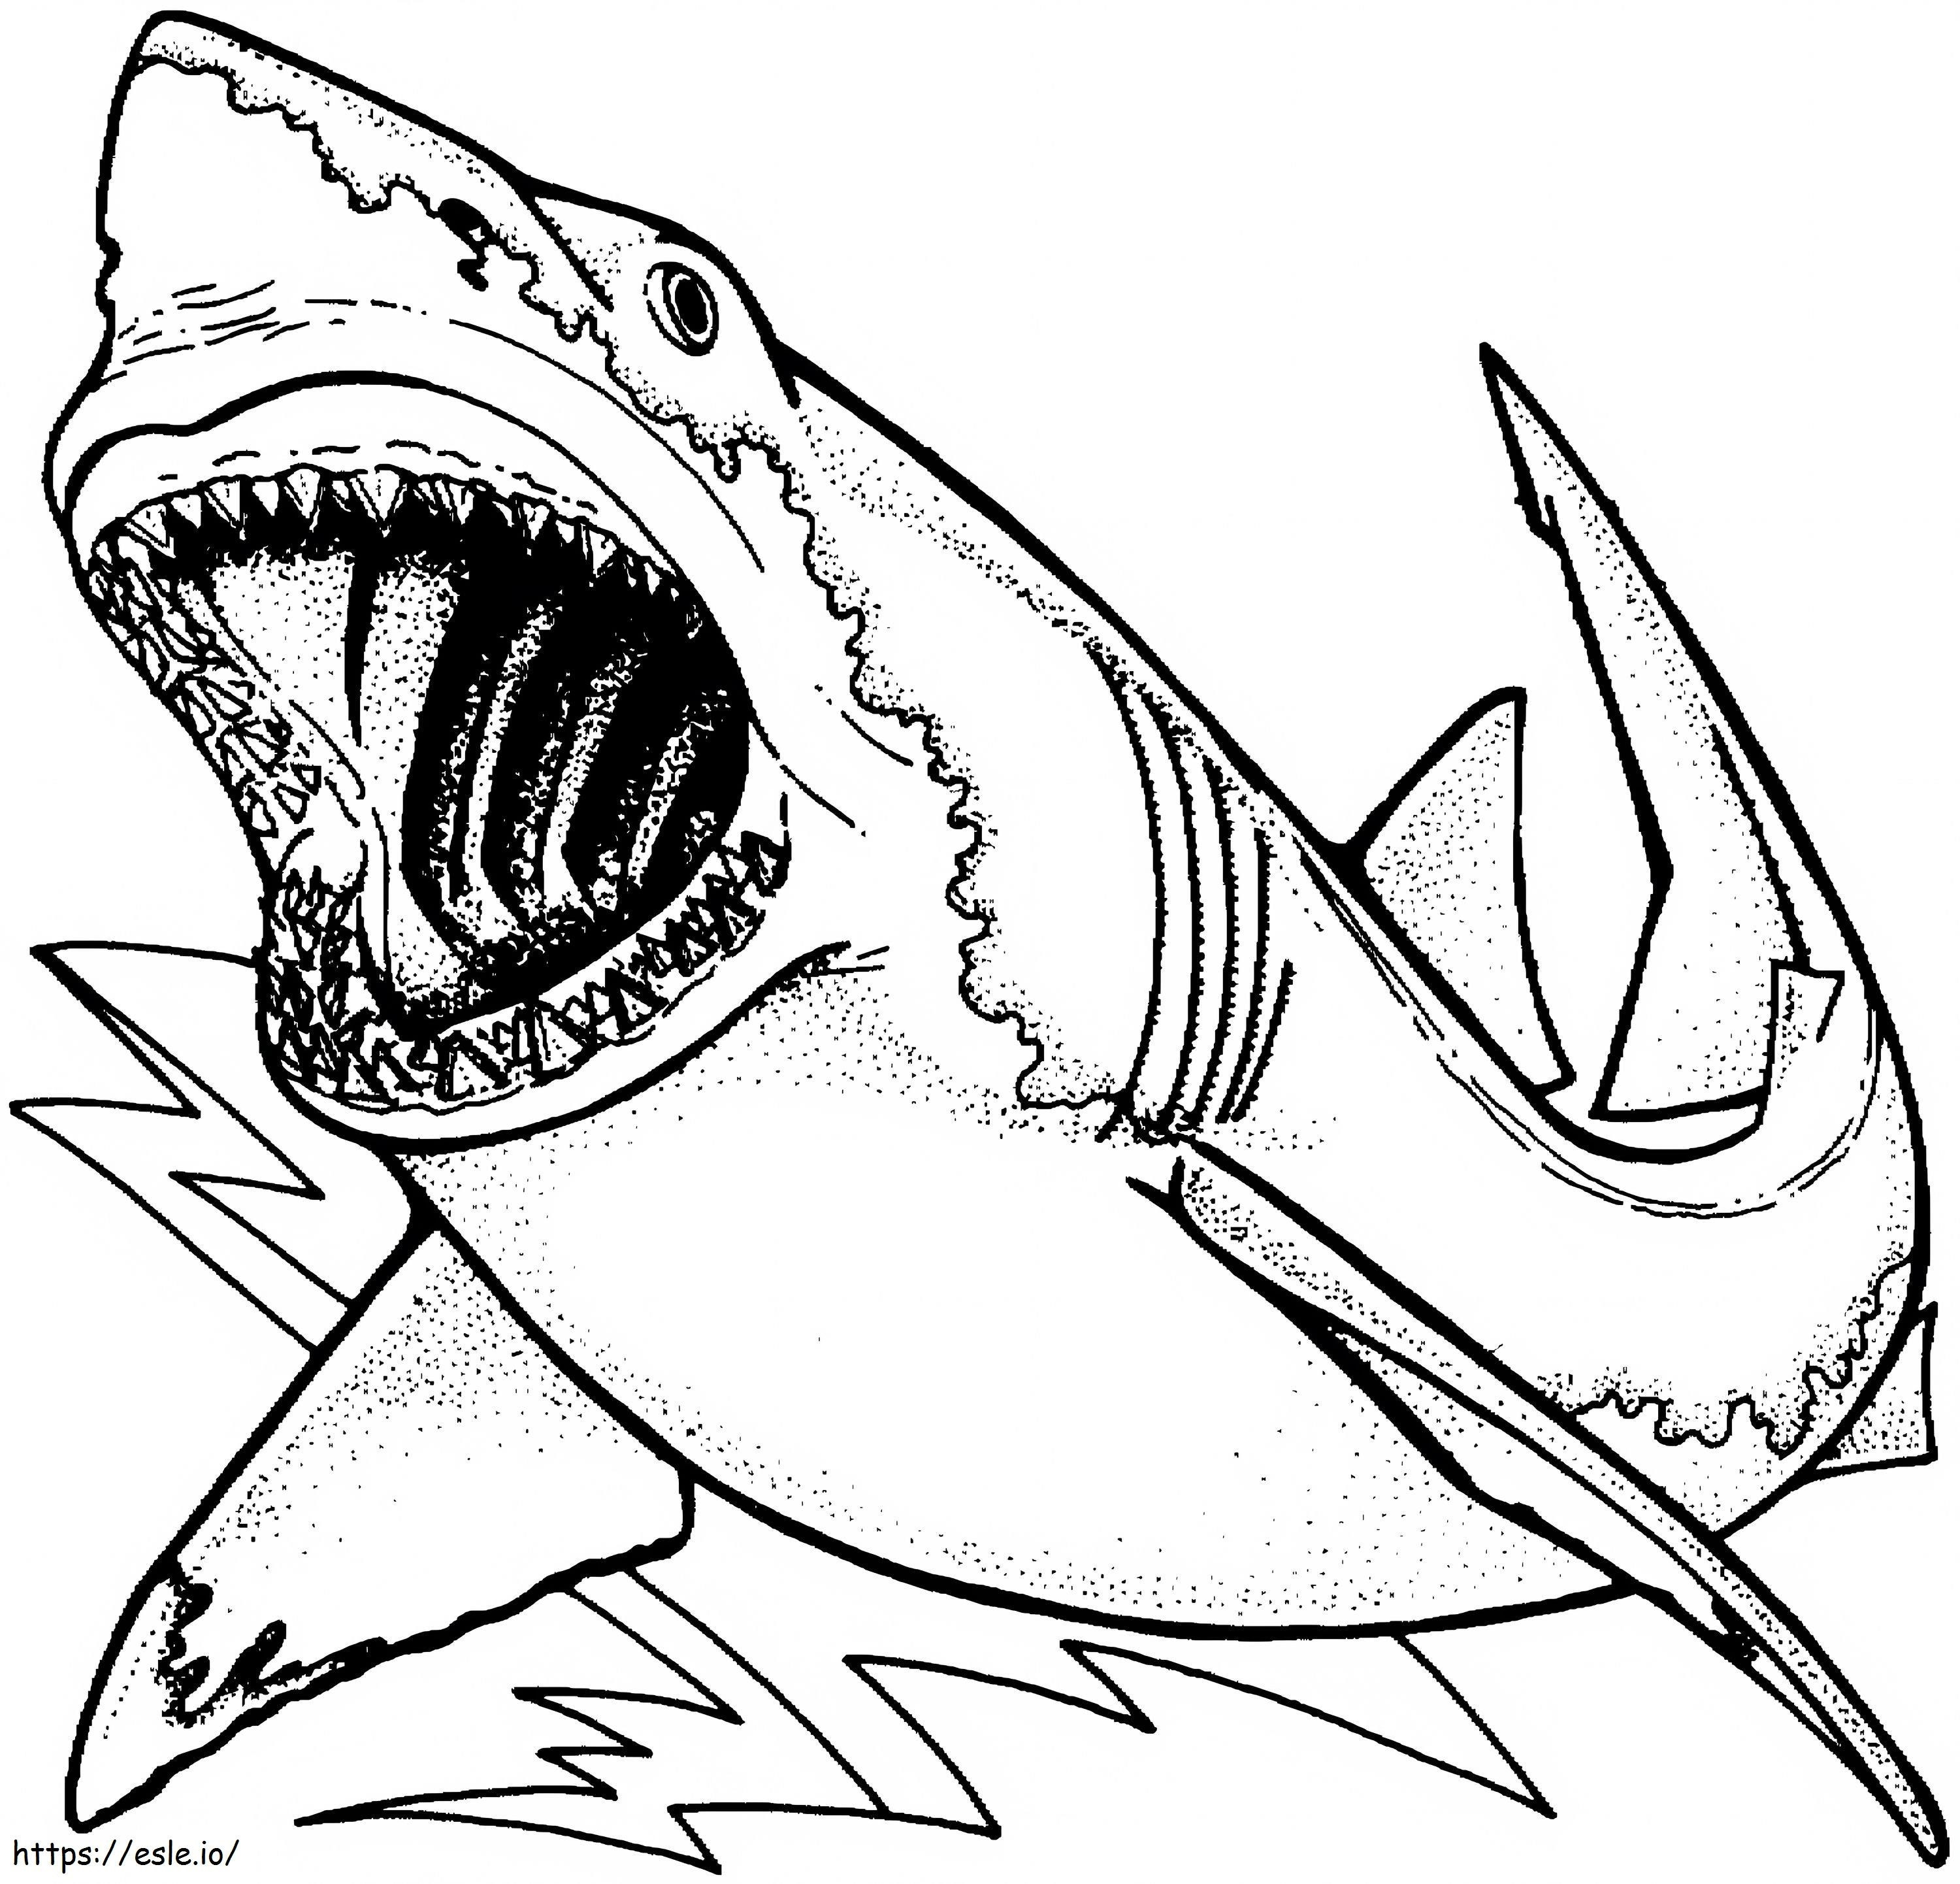  Cool For Boys New Promise Shark Coloring Page Unique Ballena De Y Adultos para colorear